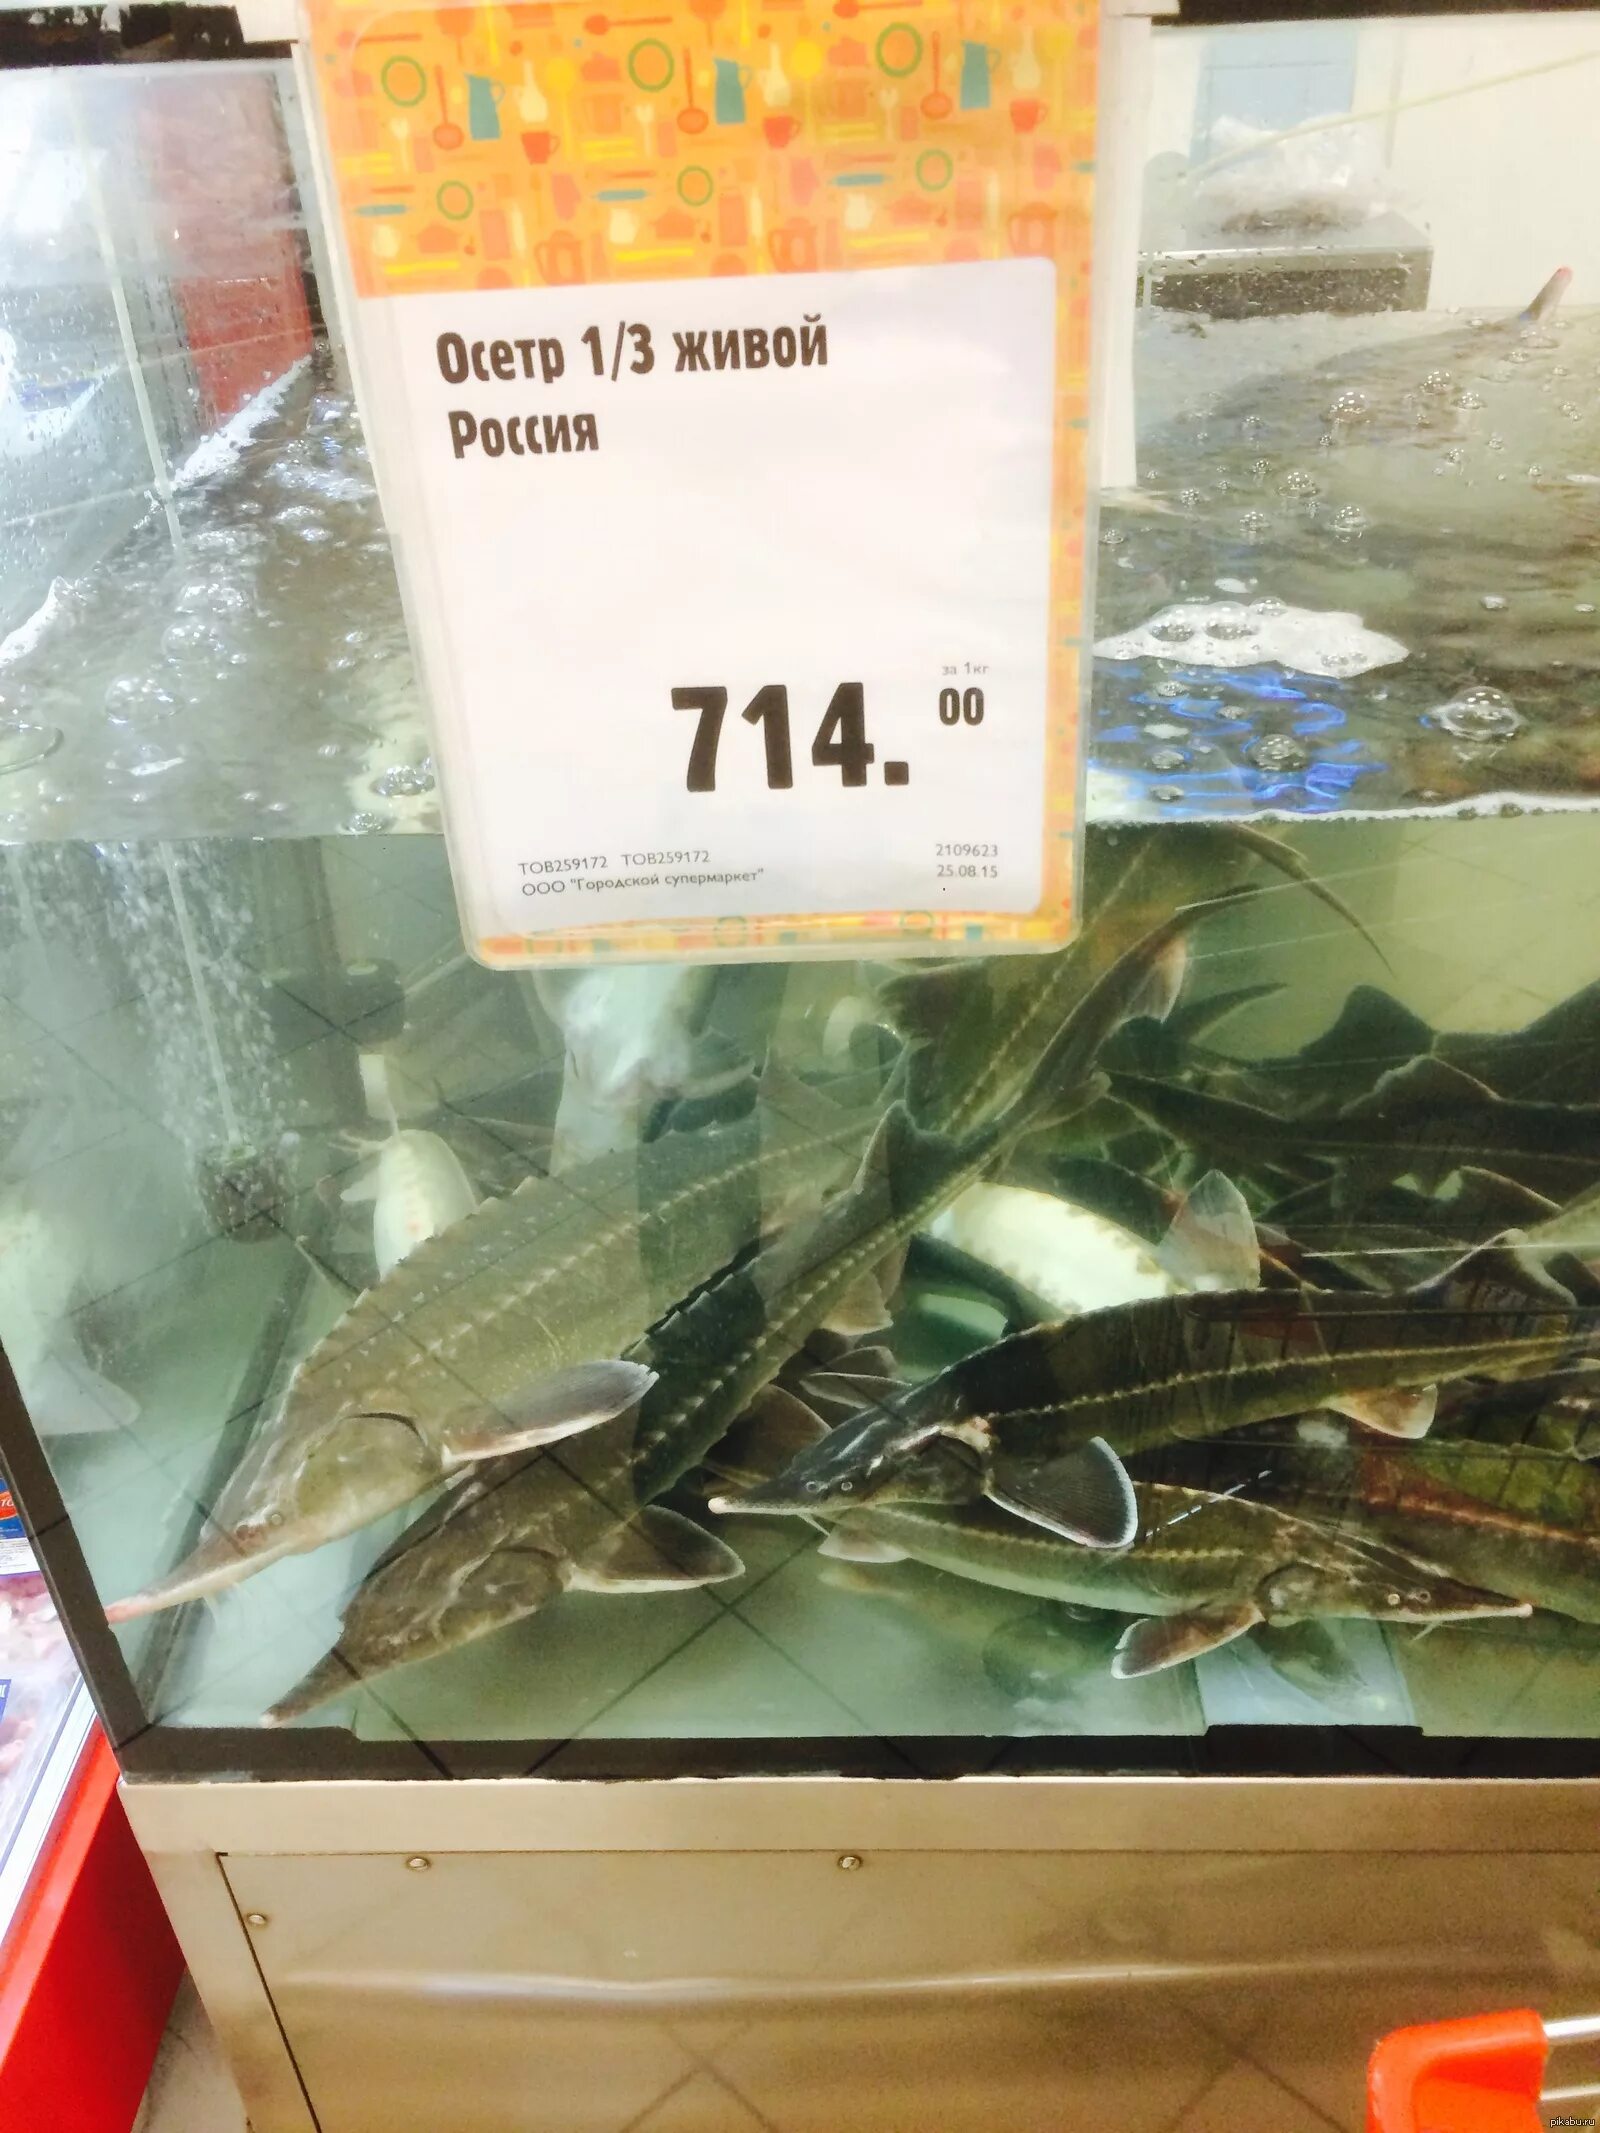 Продается живая рыба. Живая рыба в магазине. Живая рыба в Ашане. Живая рыба в окее. Живой осетр в магазине.